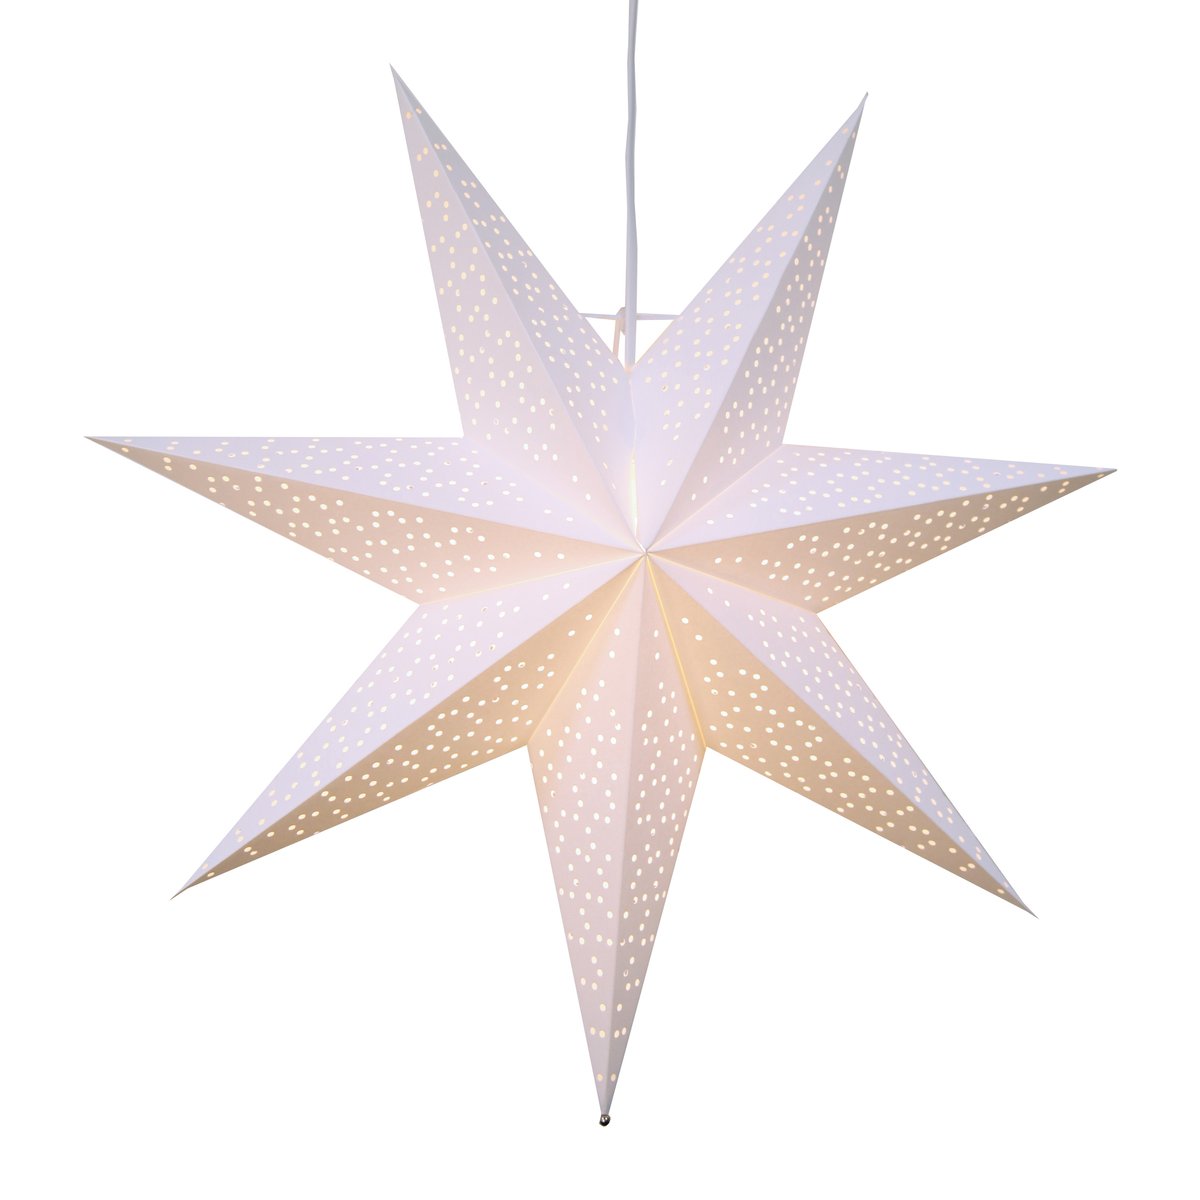 Star Trading Dot adventsstjerne 54 cm Hvid